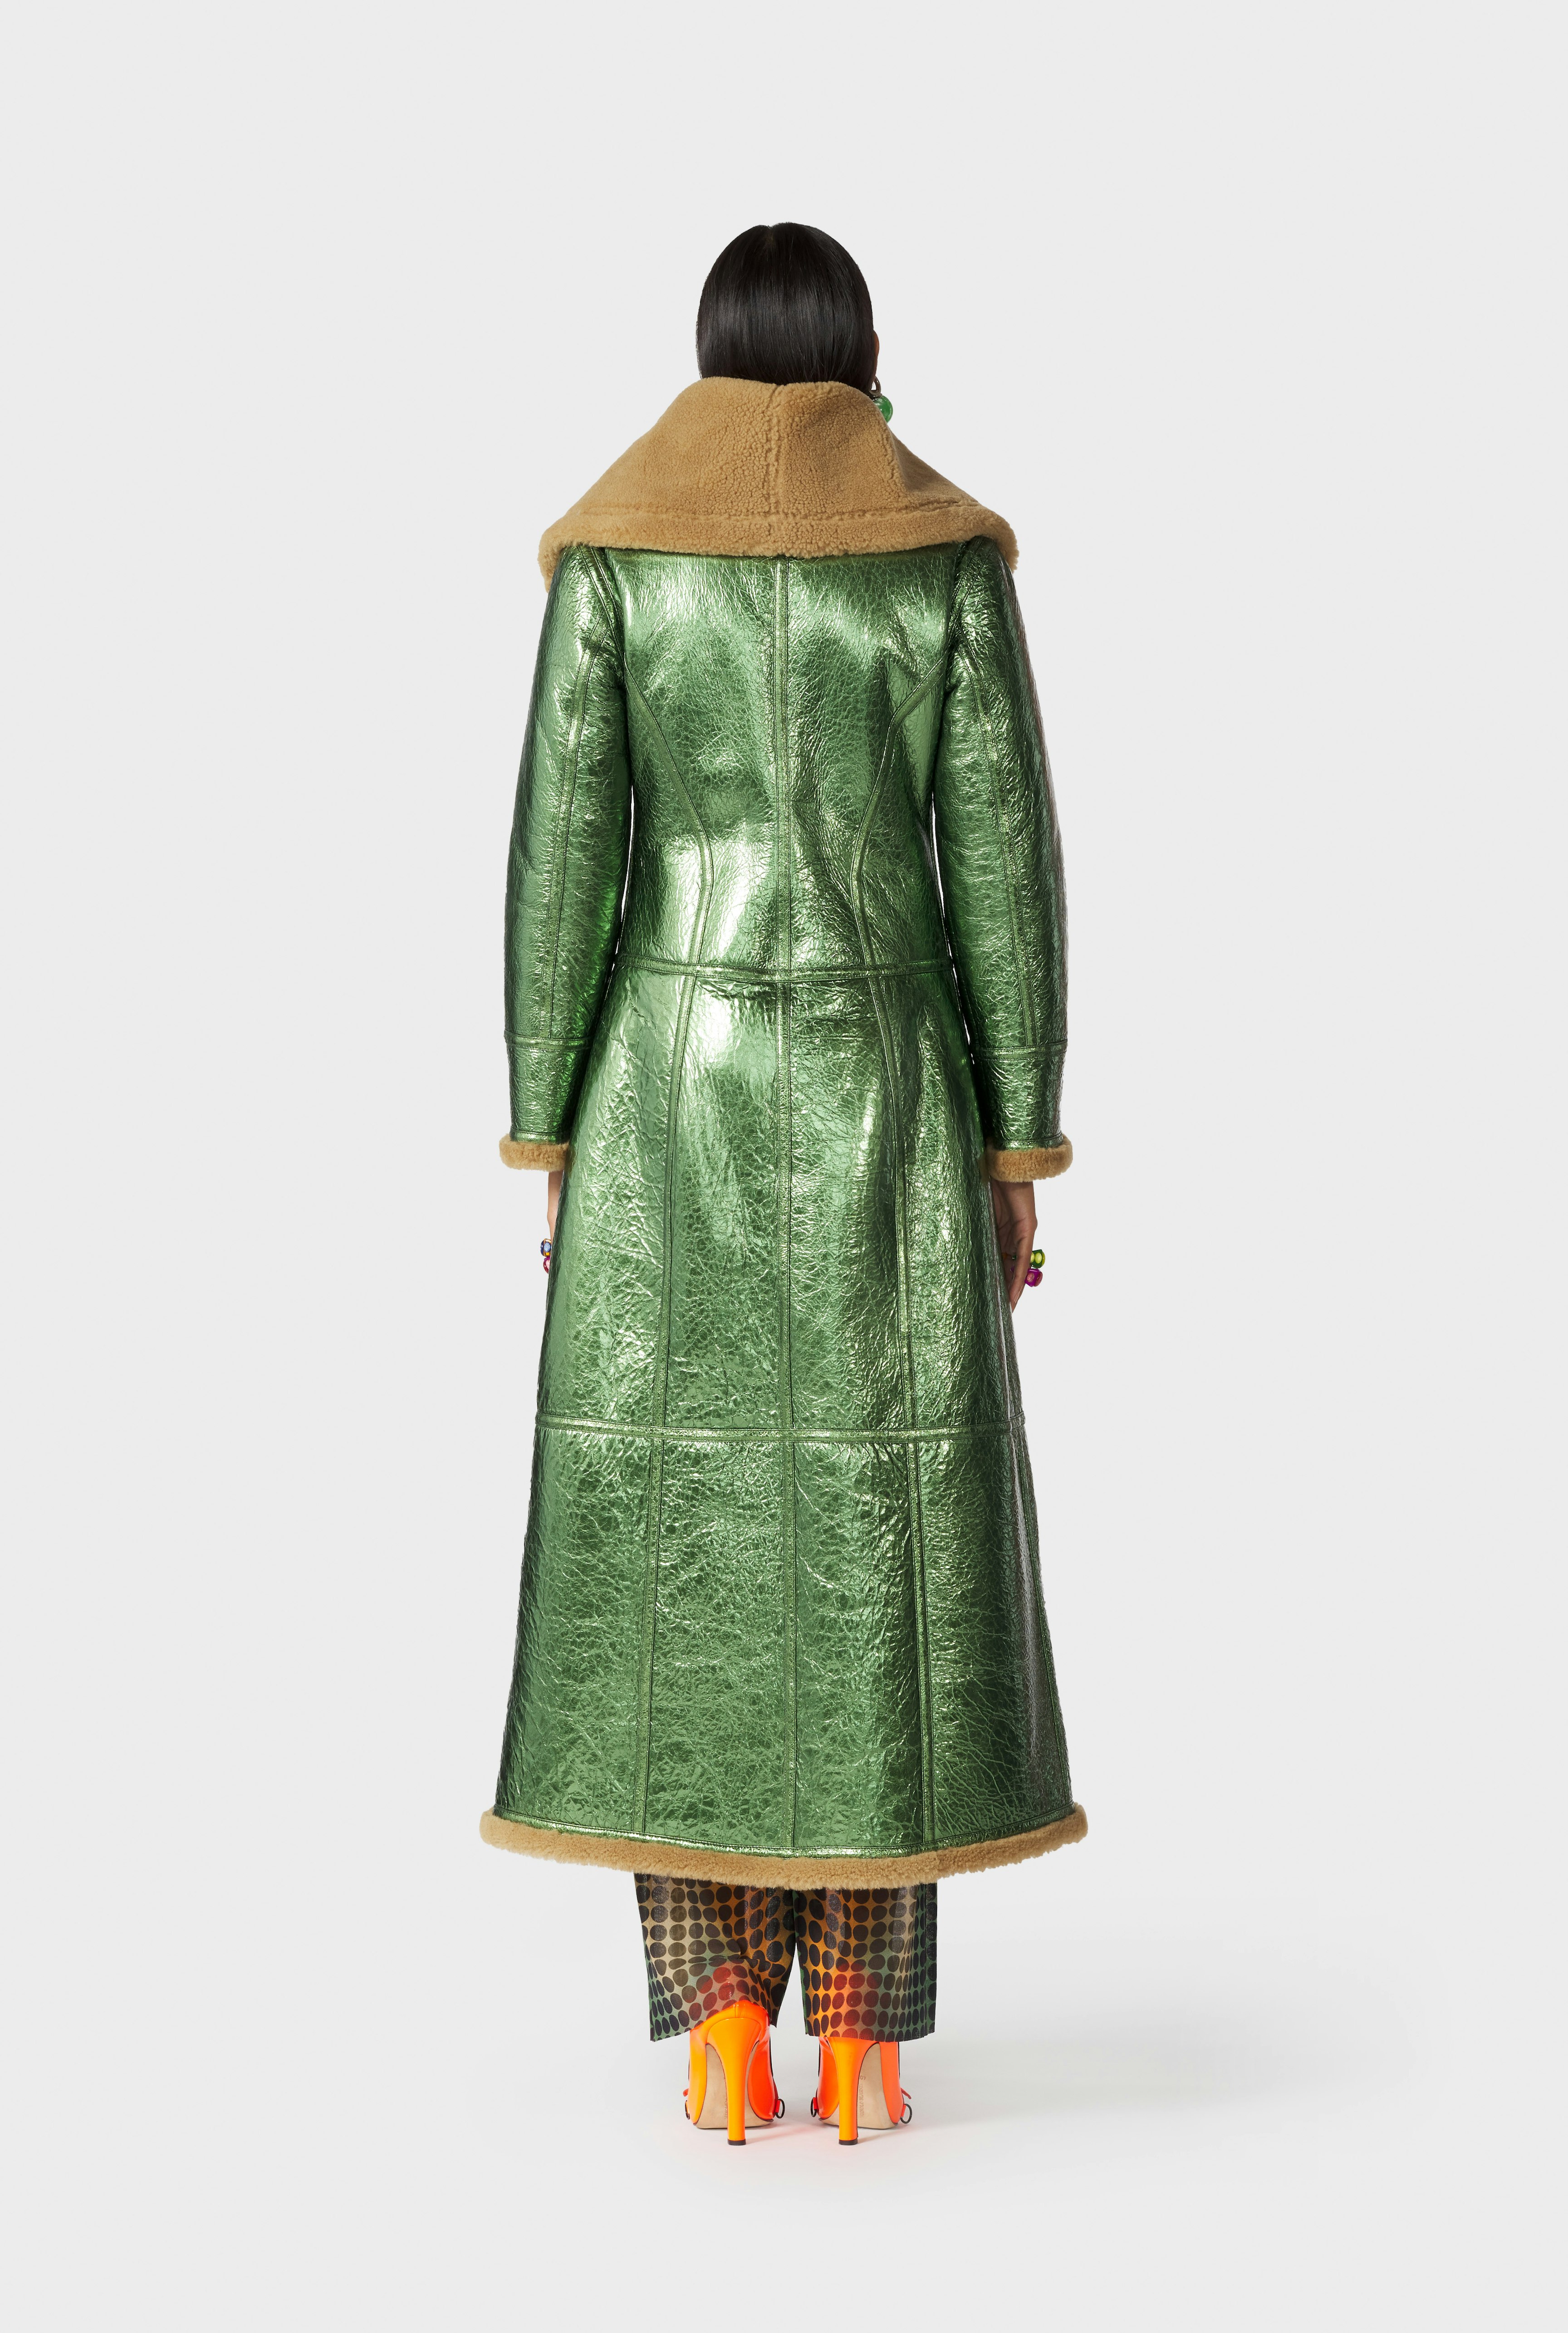 The Laminated Green Coat